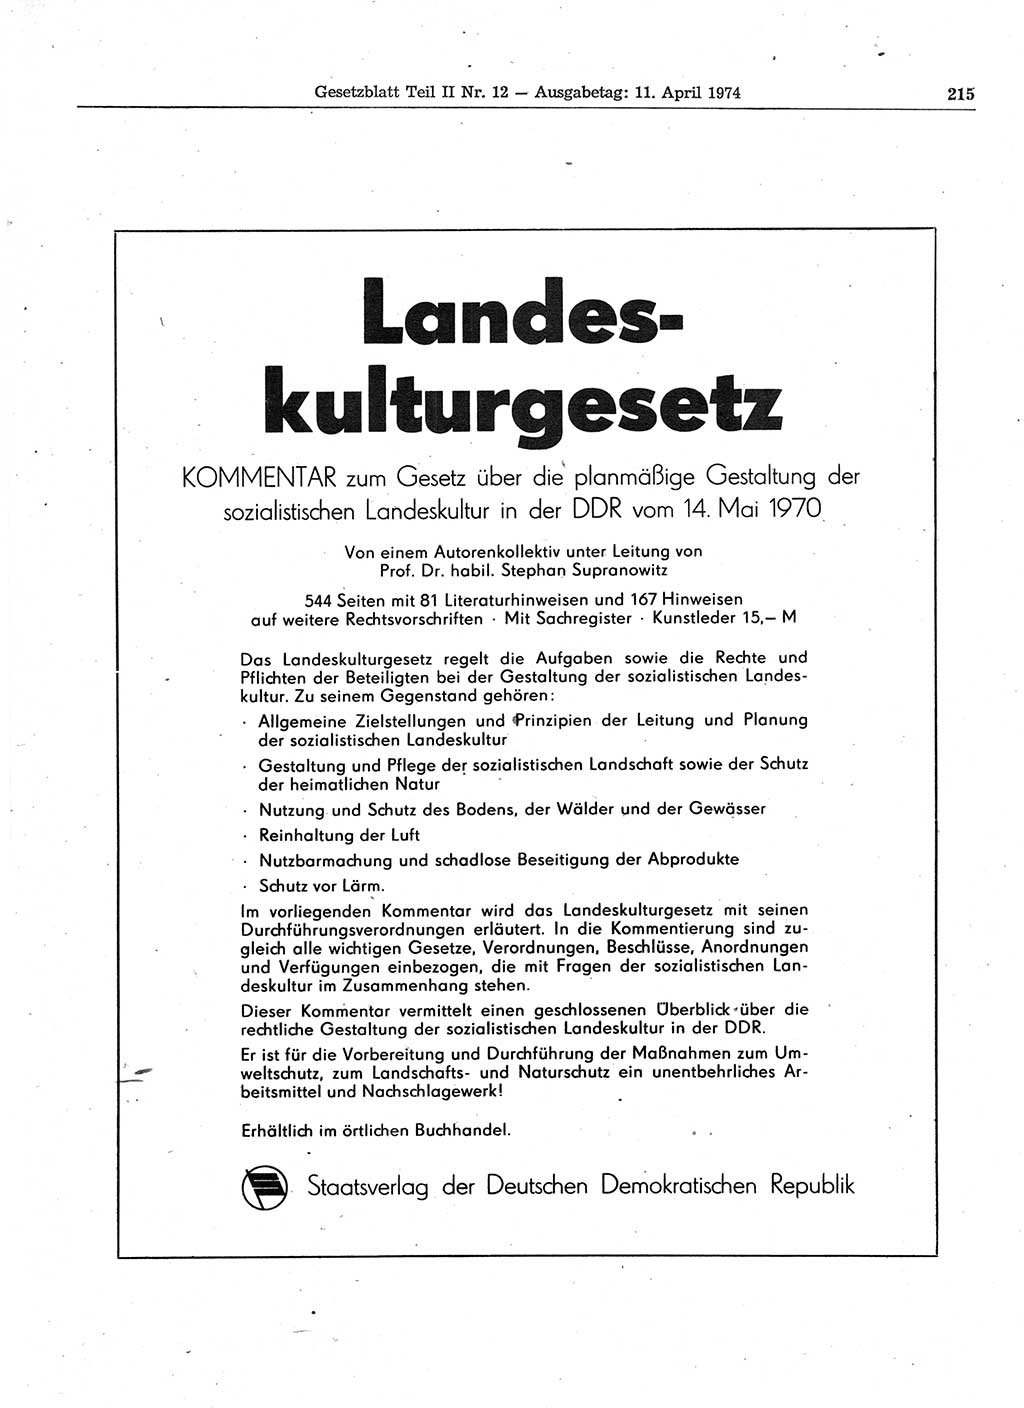 Gesetzblatt (GBl.) der Deutschen Demokratischen Republik (DDR) Teil ⅠⅠ 1974, Seite 215 (GBl. DDR ⅠⅠ 1974, S. 215)